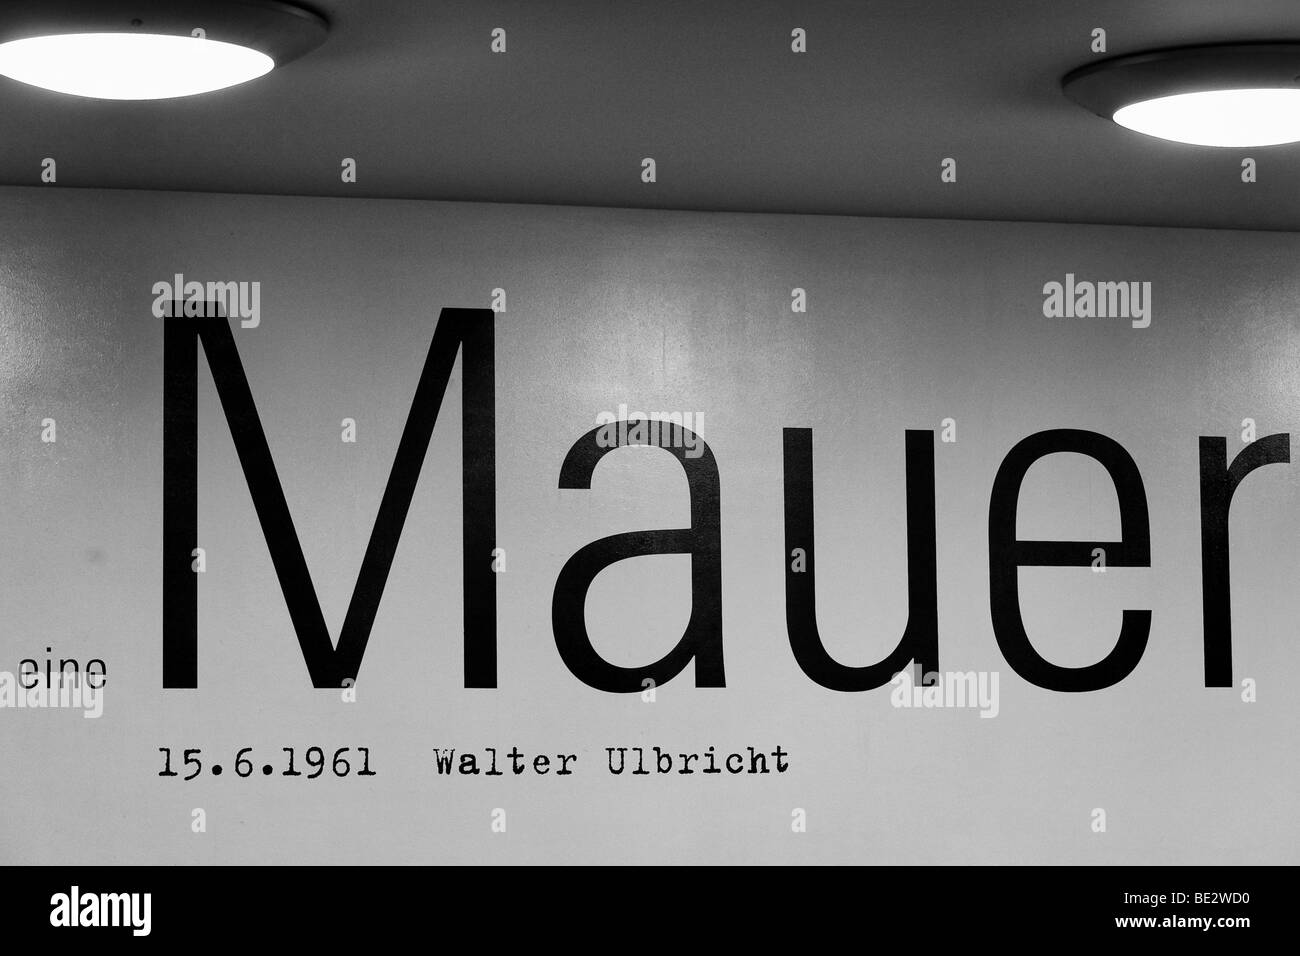 La palabra 'Mauer', 'Wall', parte de la afirmación de Walter Ulbricht en 1961, Berlín, Alemania, Europa Foto de stock